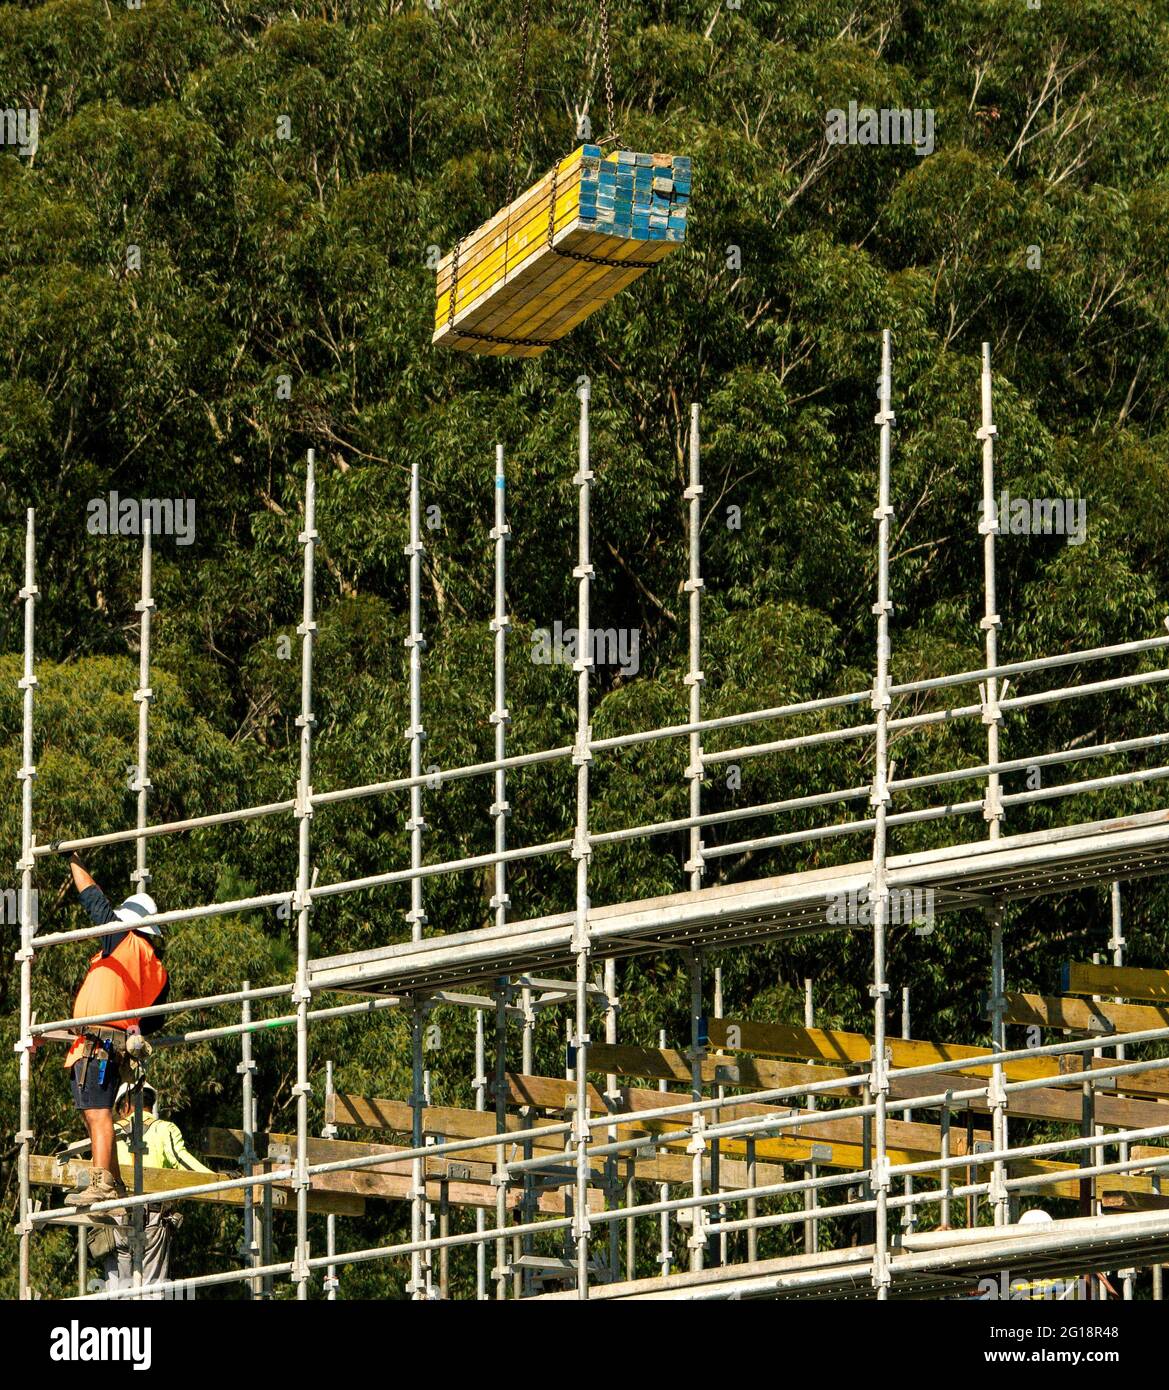 19 aprile 2021. Lavoratori che installano impalcature e casseforme di pavimento in cemento di legno su nuove unità domestiche sviluppo a 56-58 Beane St. Gosford.Australia. Foto Stock